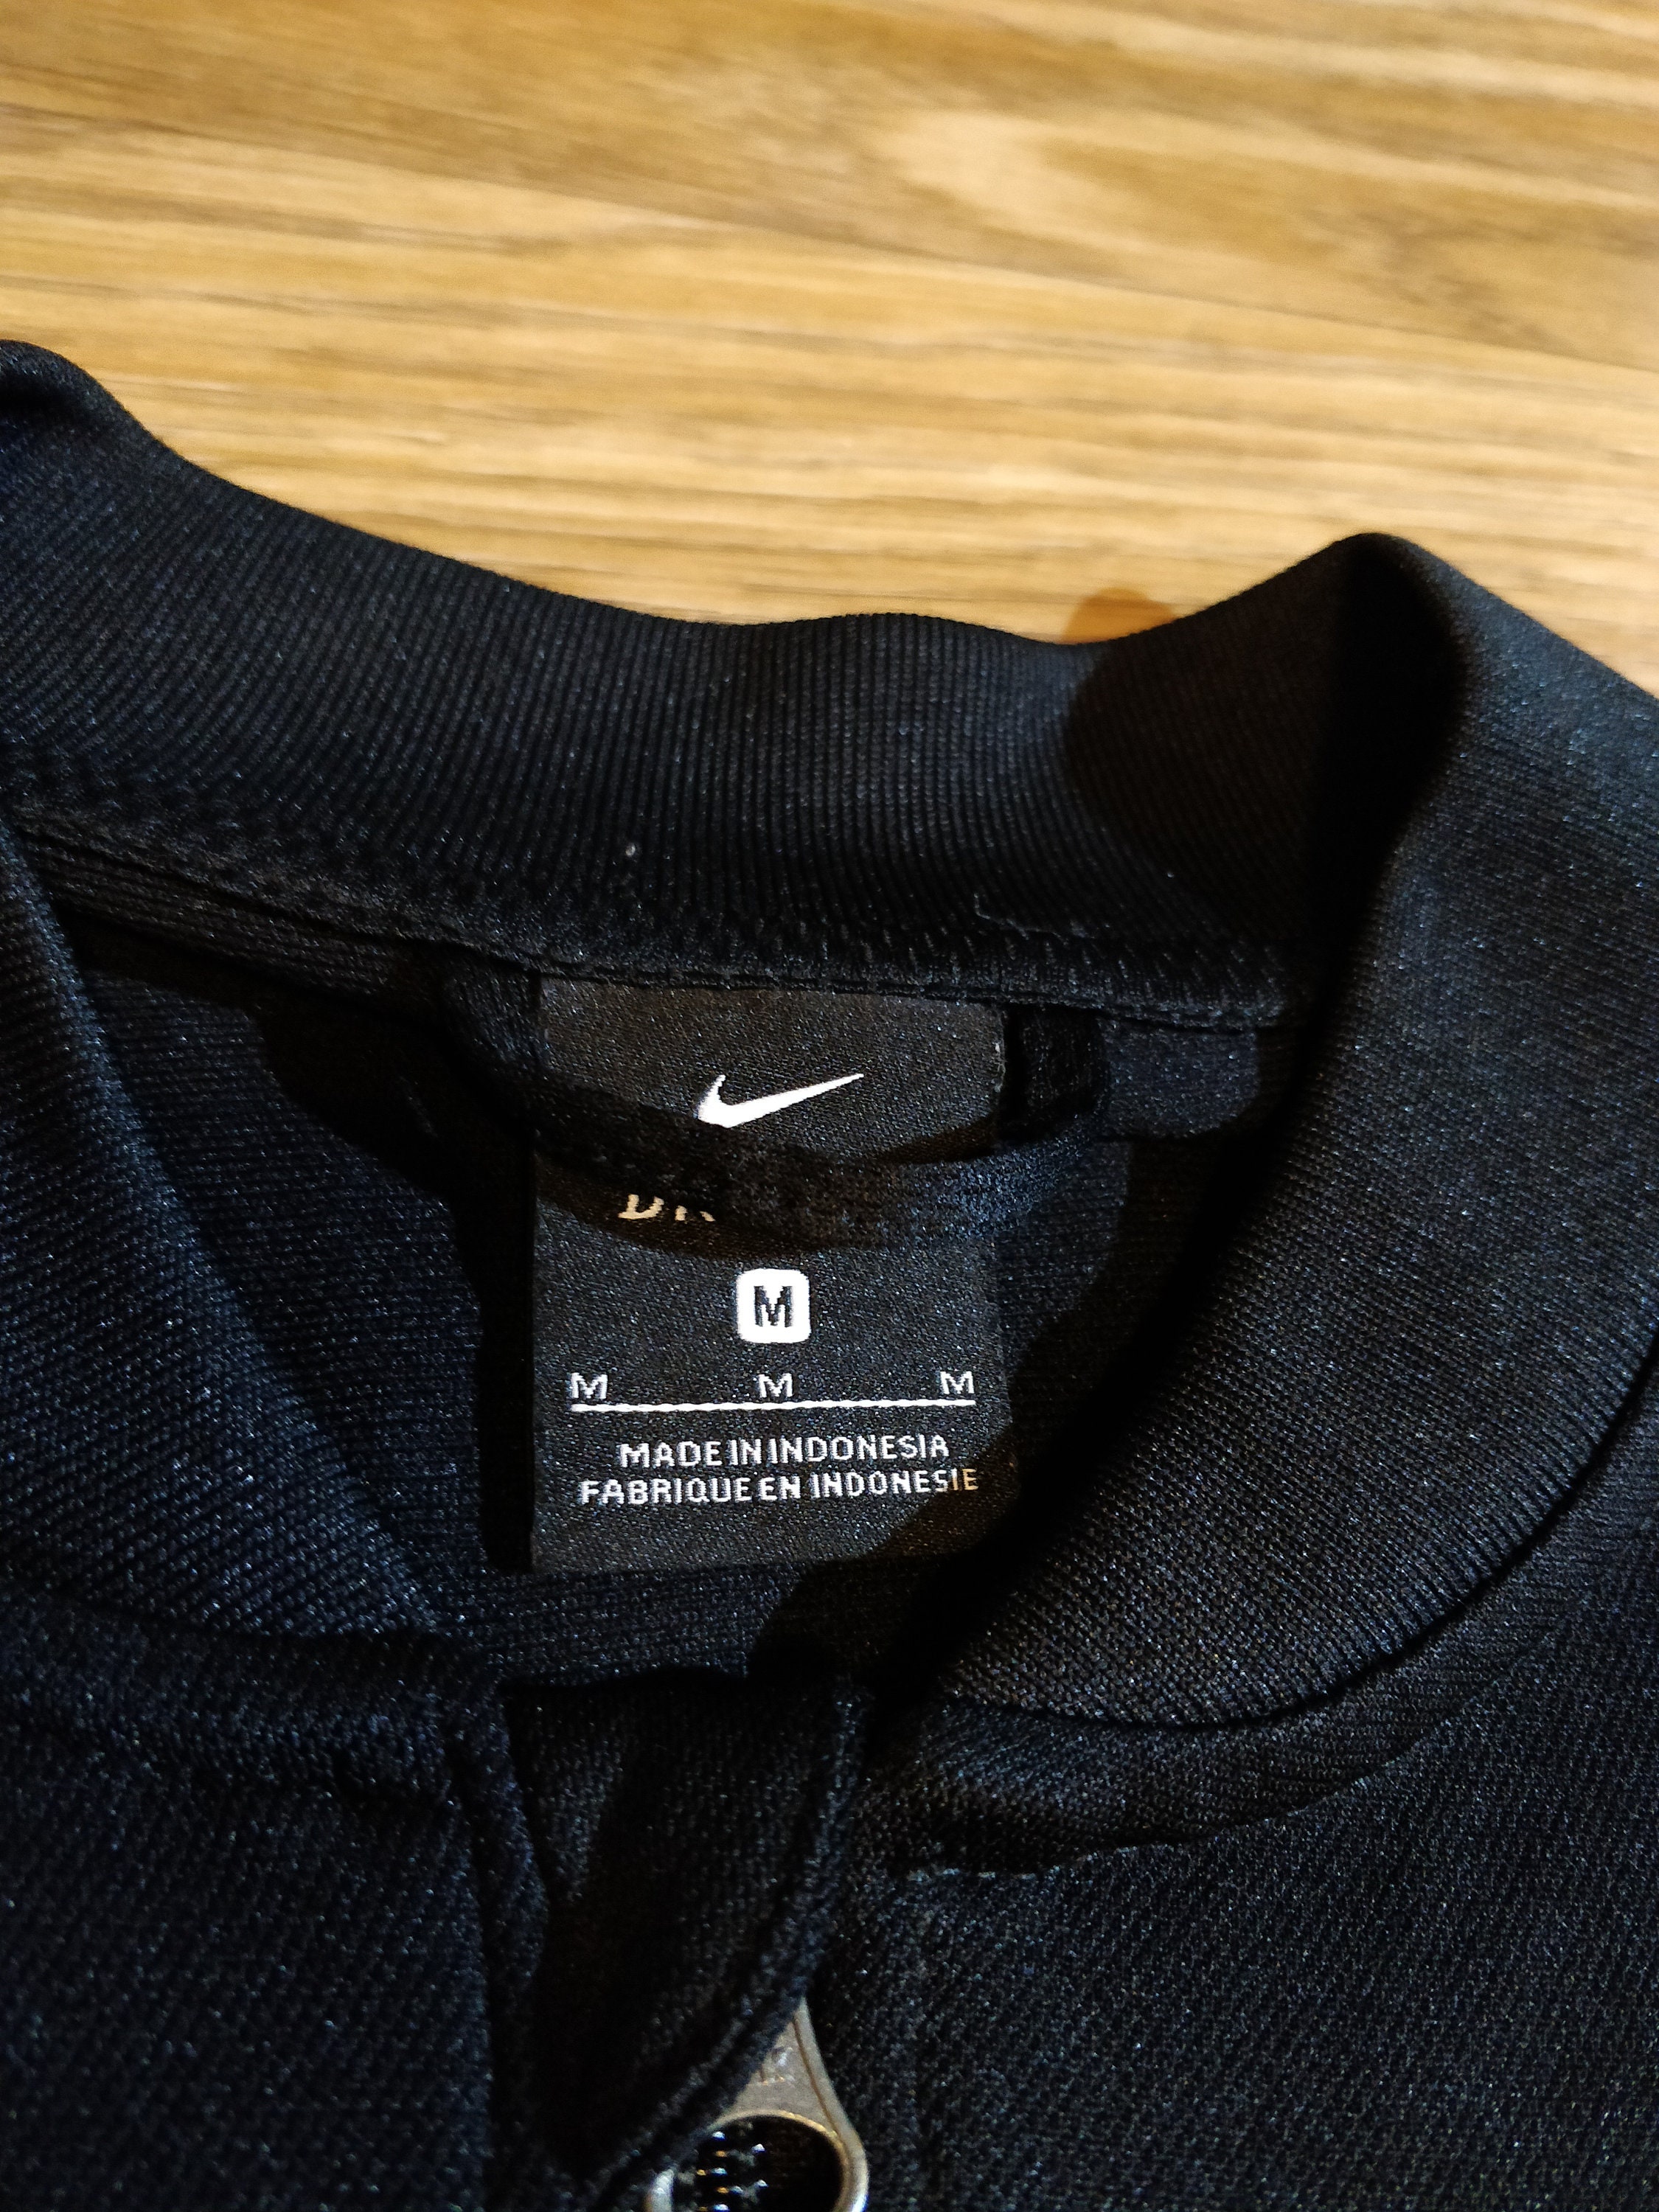 Nike FC Heimertingen Germany Mens Track Jacket Football Soccer - Etsy